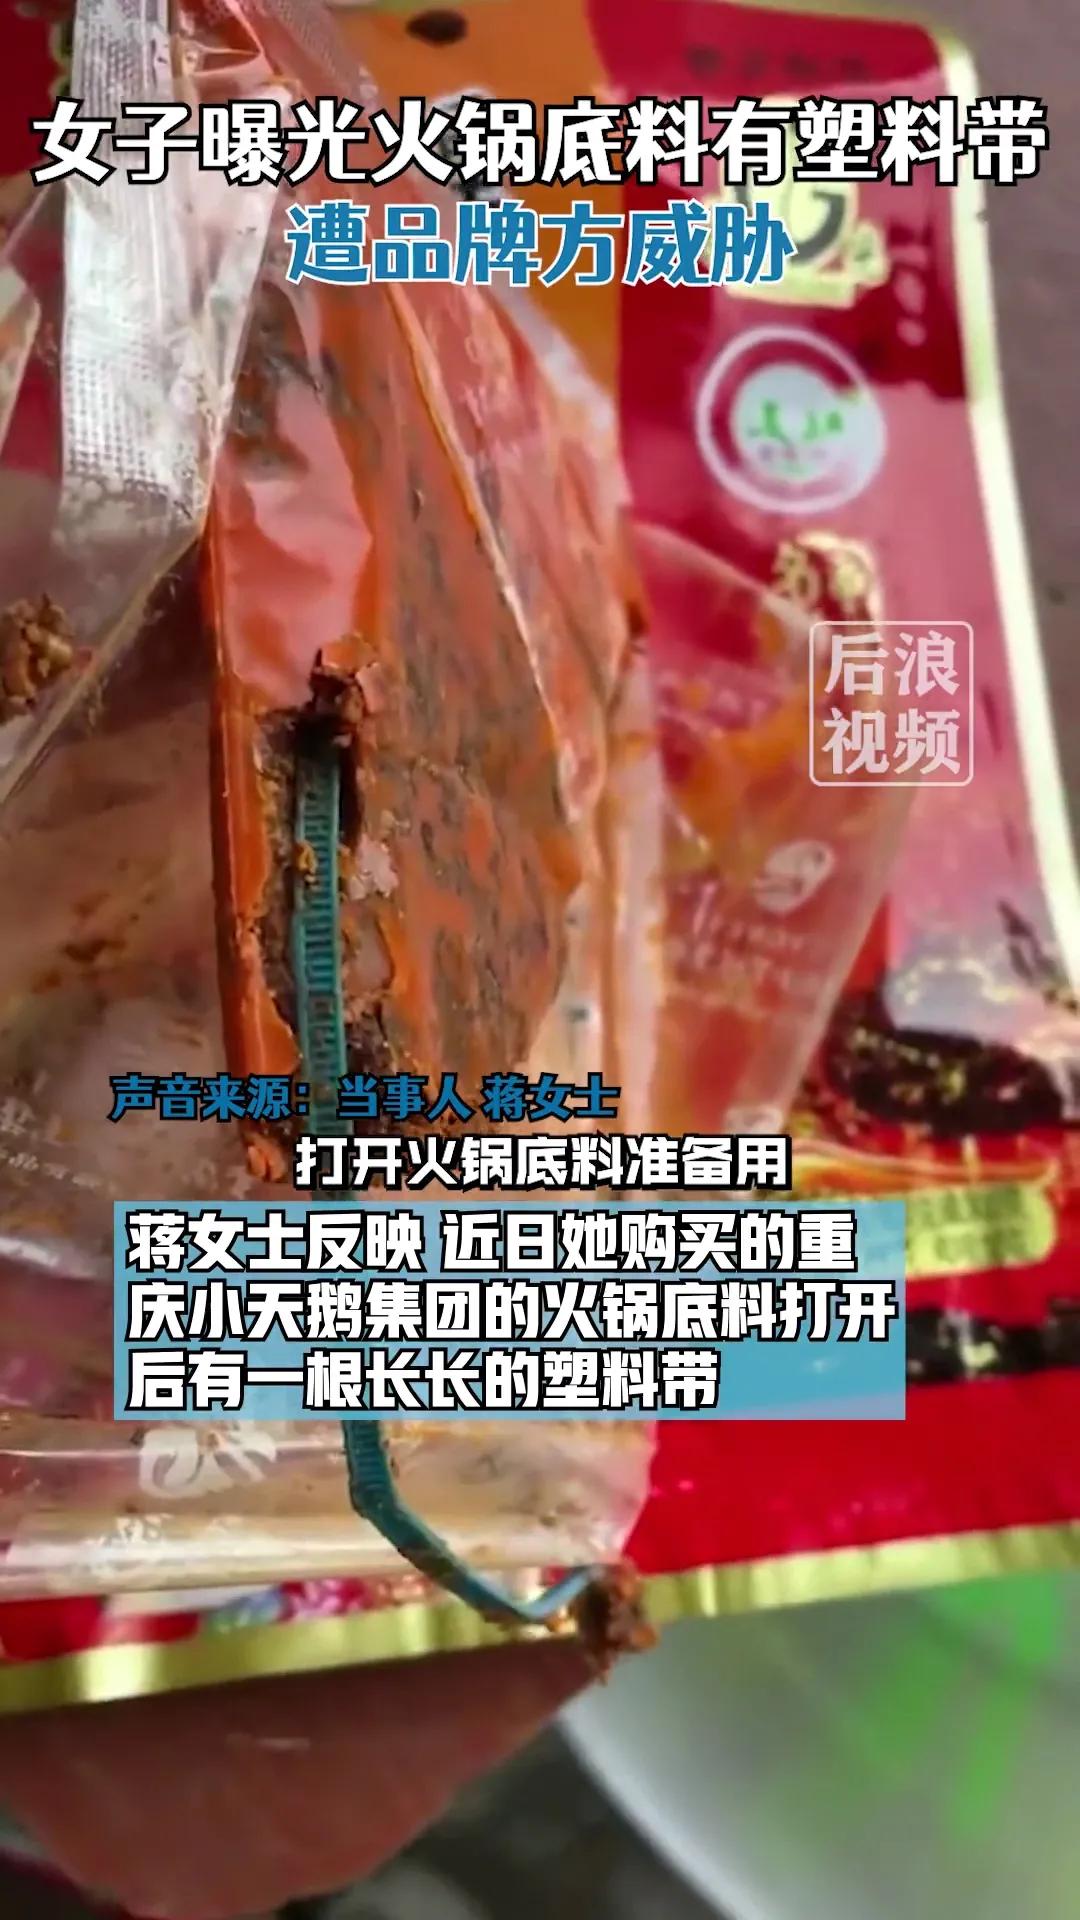 重庆小天鹅集团的火锅底料有异物，消费者遭安全威胁